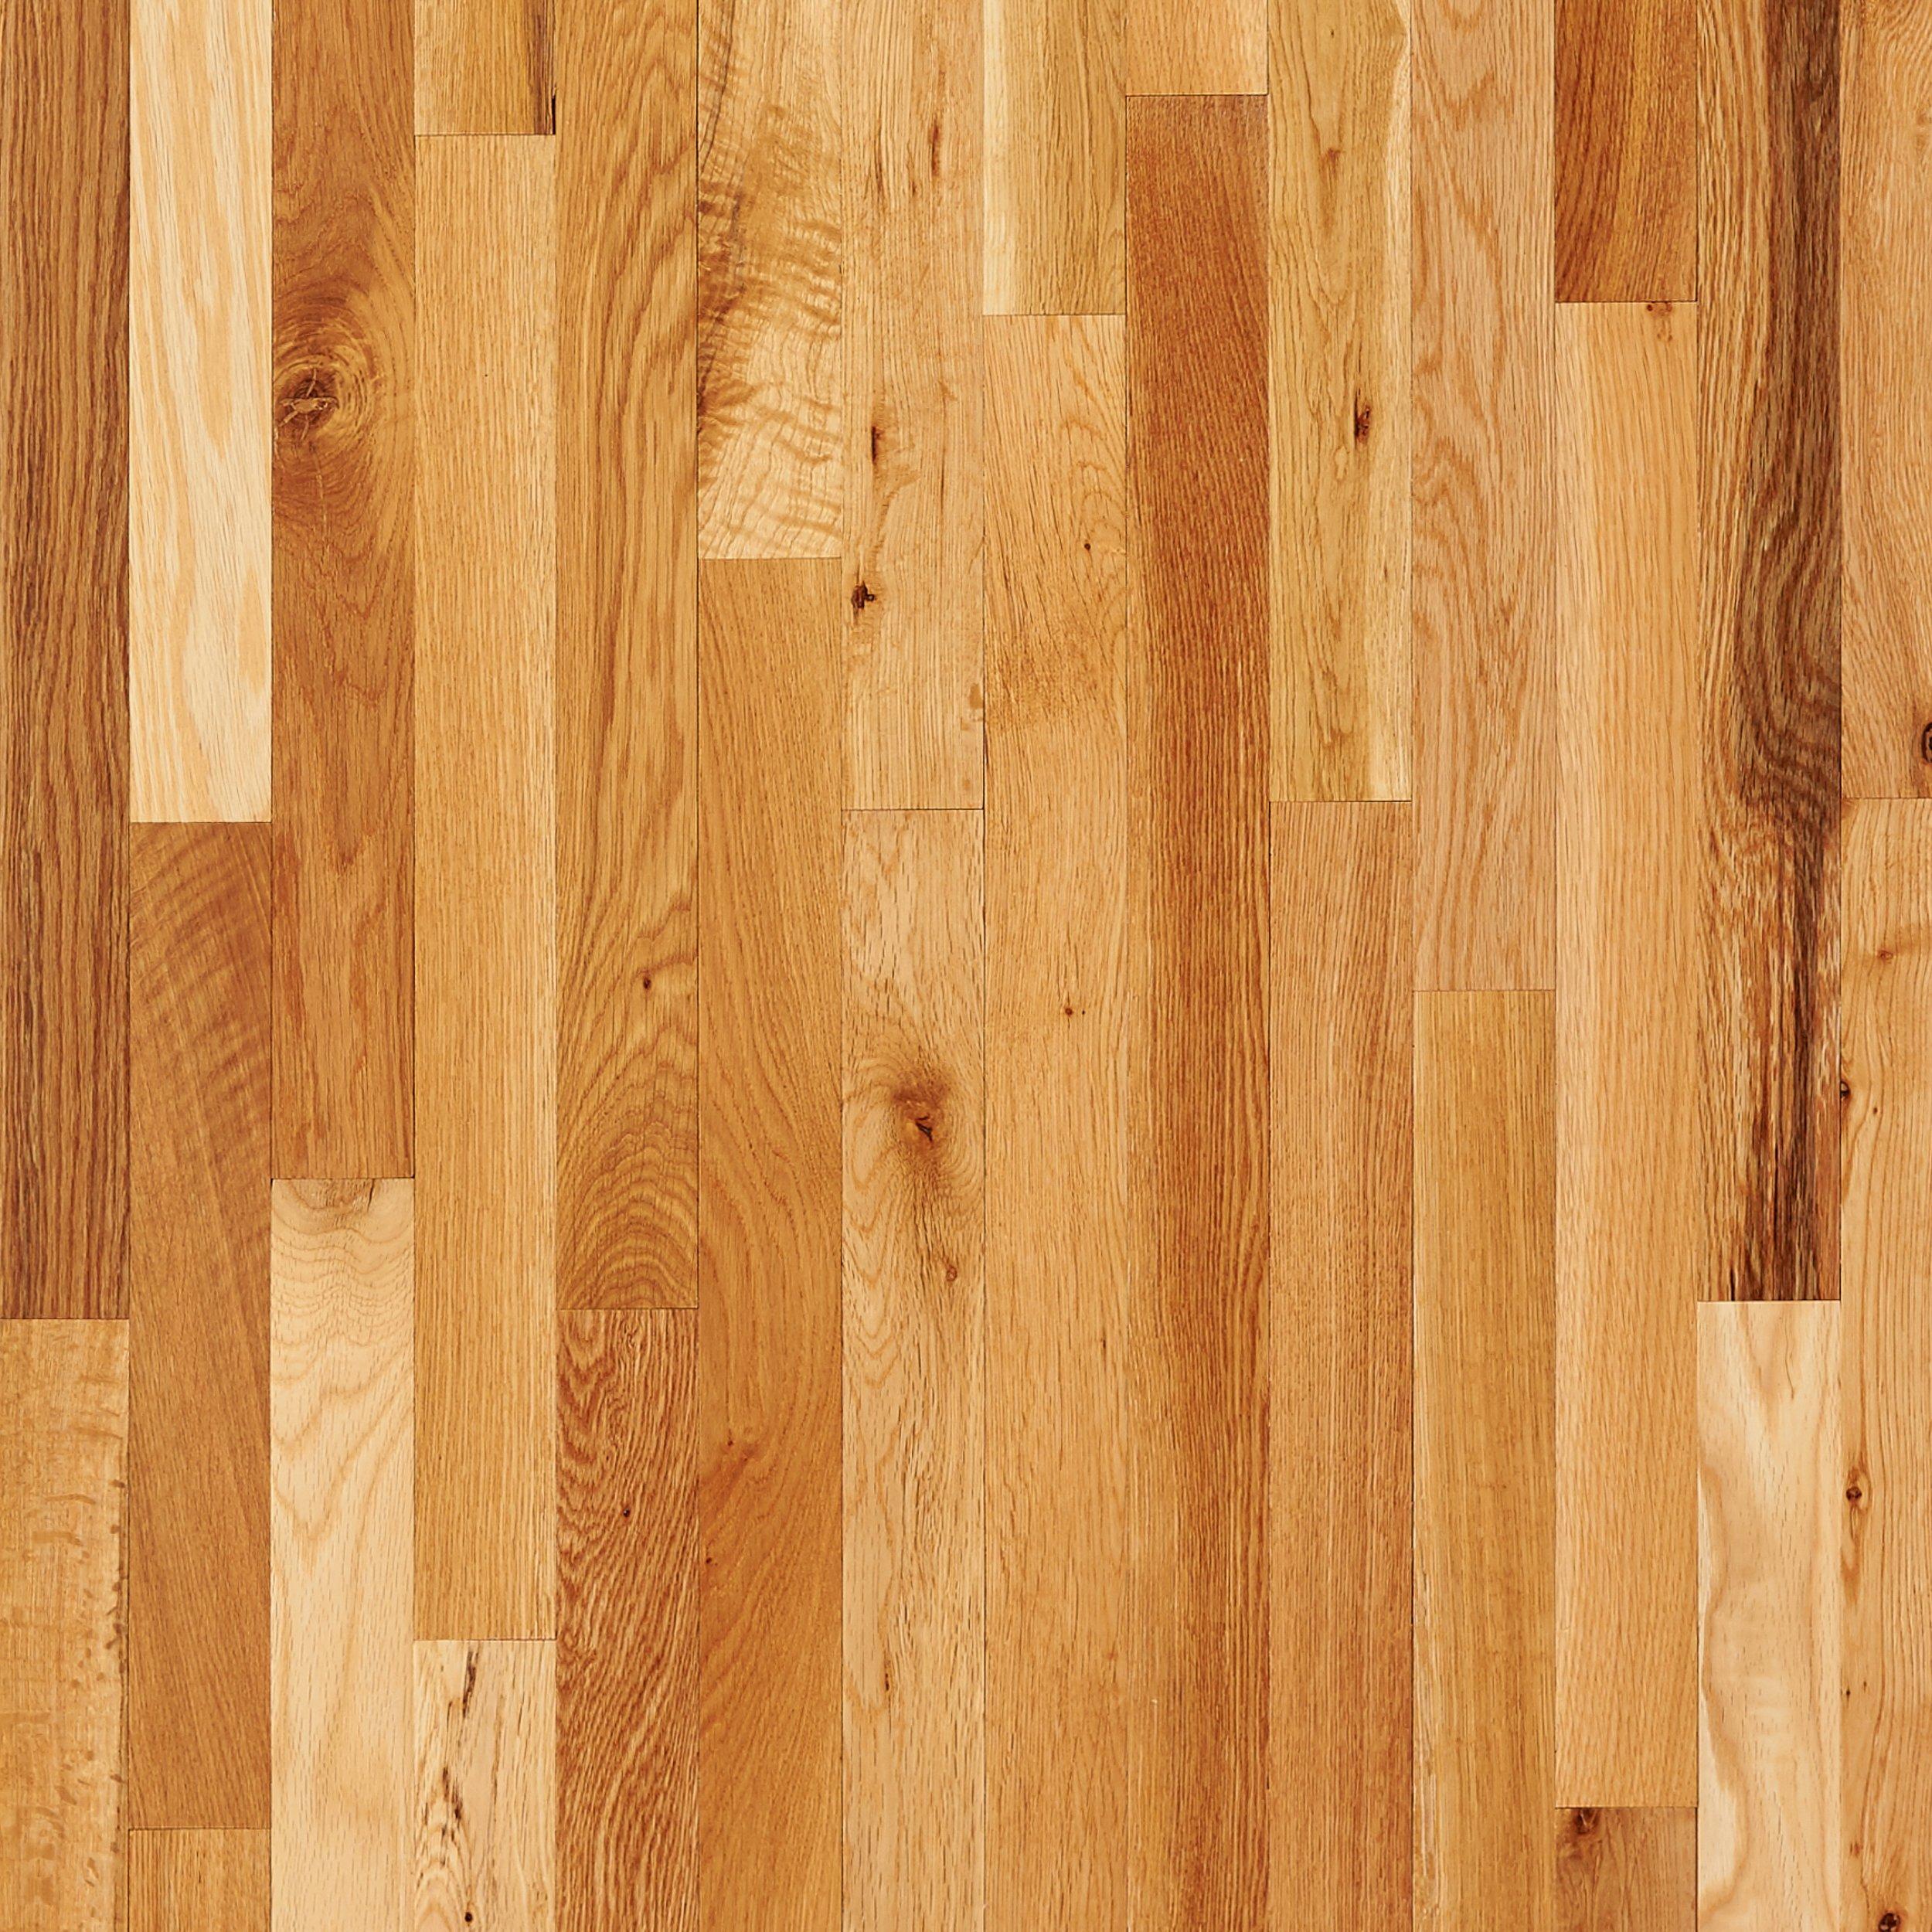 oak hardwood flooring natural oak smooth solid hardwood TGNZPNG